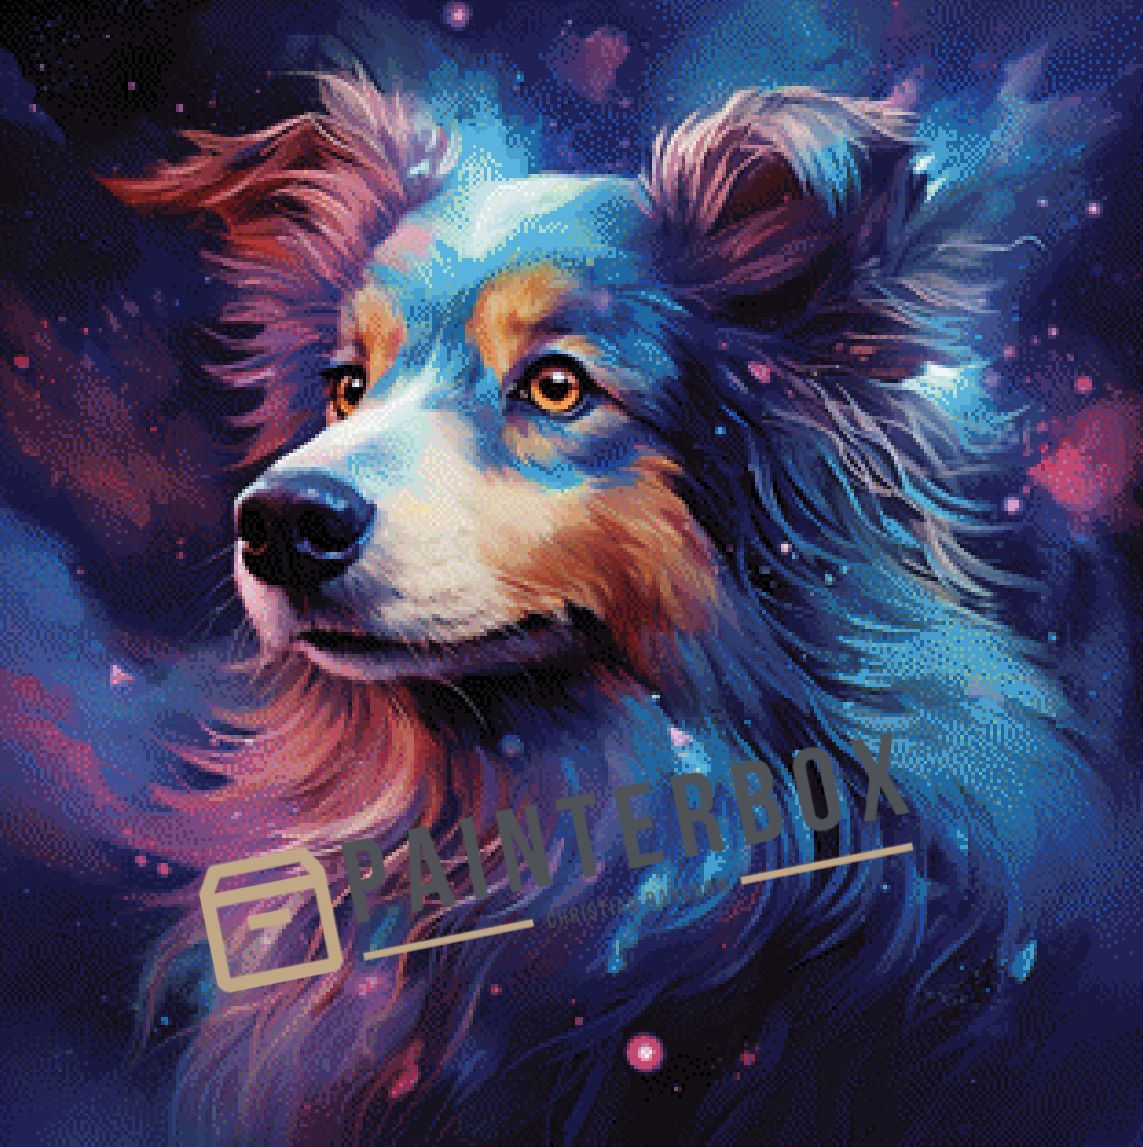 Galaxy Shepard by ellufija - 170 Farben